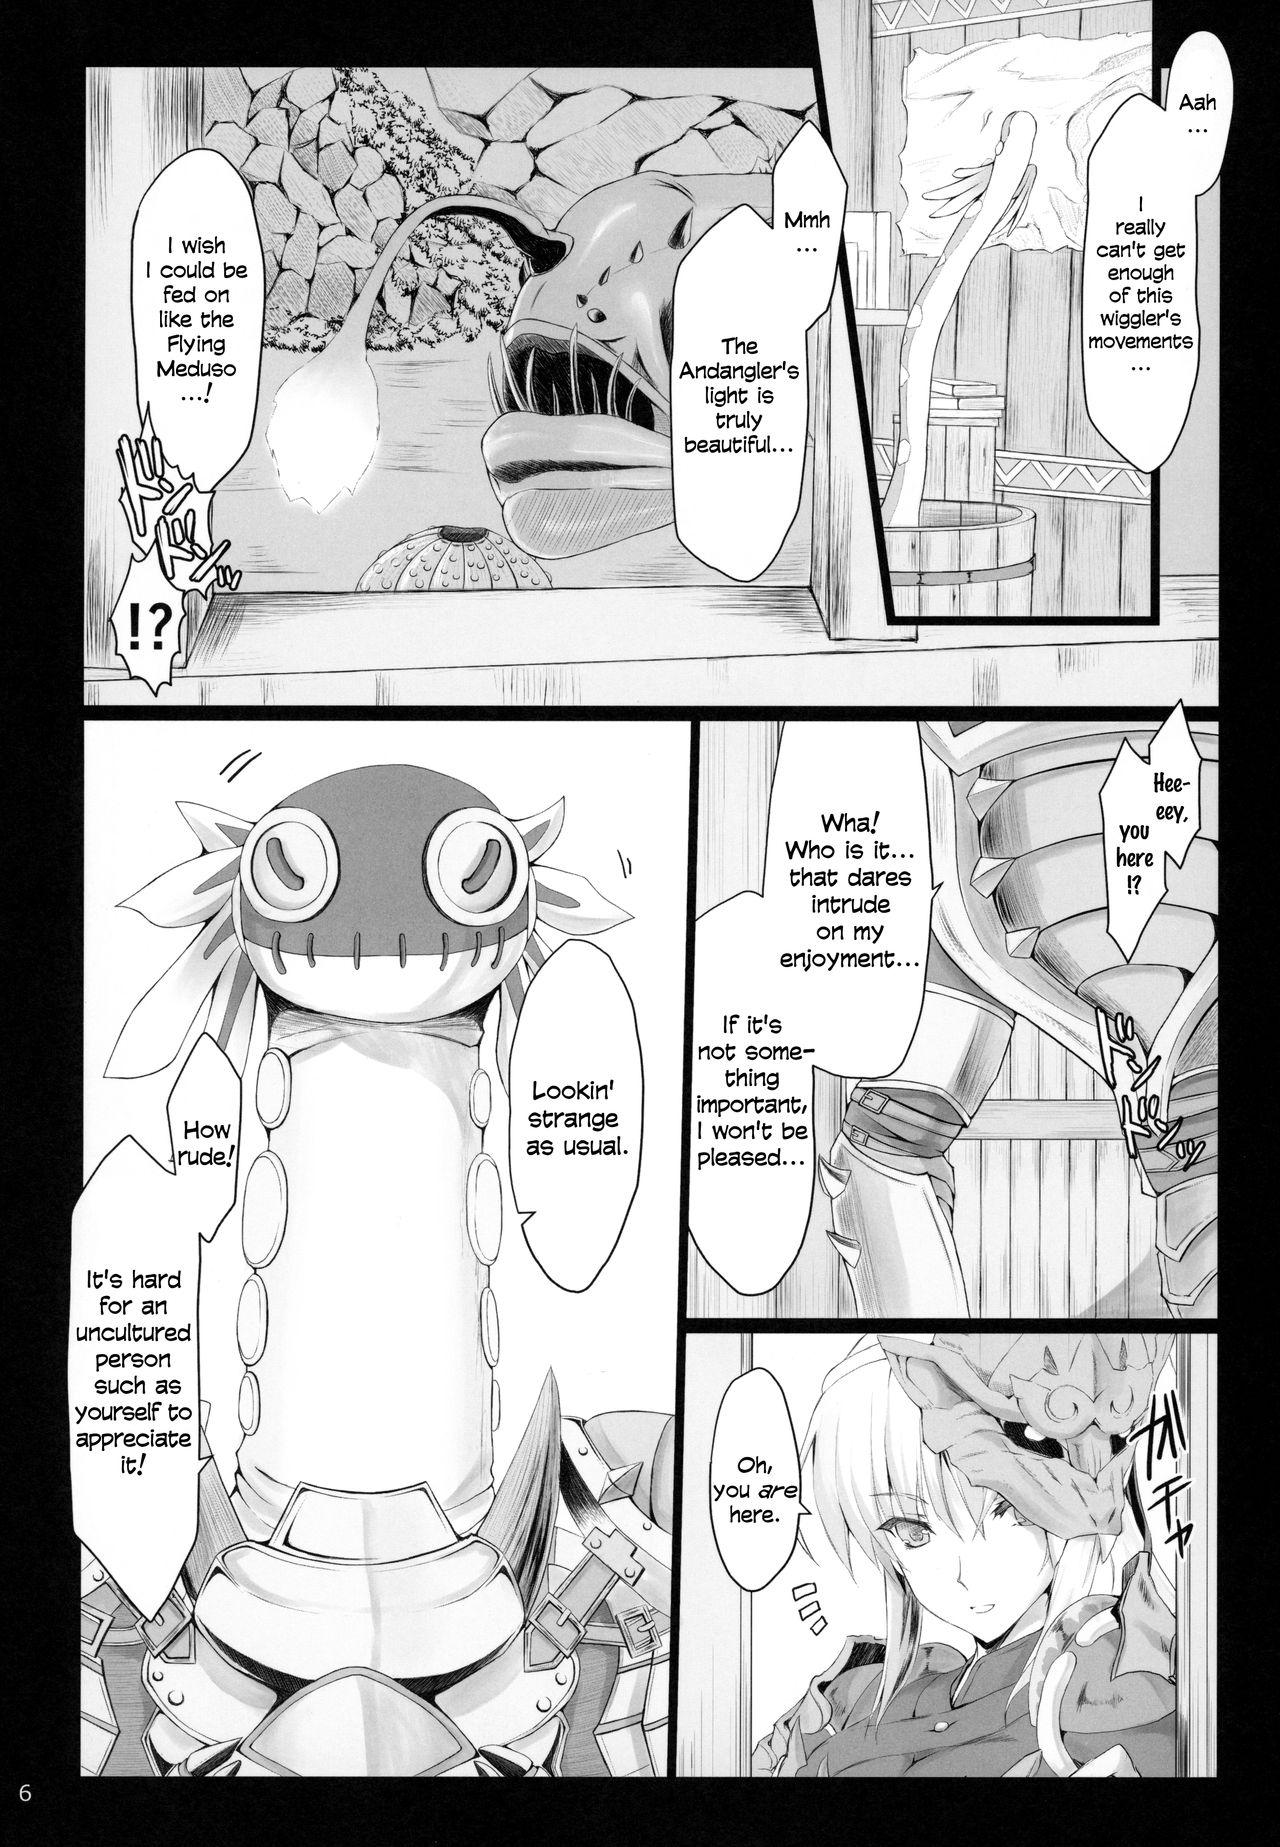 Orgy MonHun no Erohon 16 - Monster hunter Piroca - Page 5